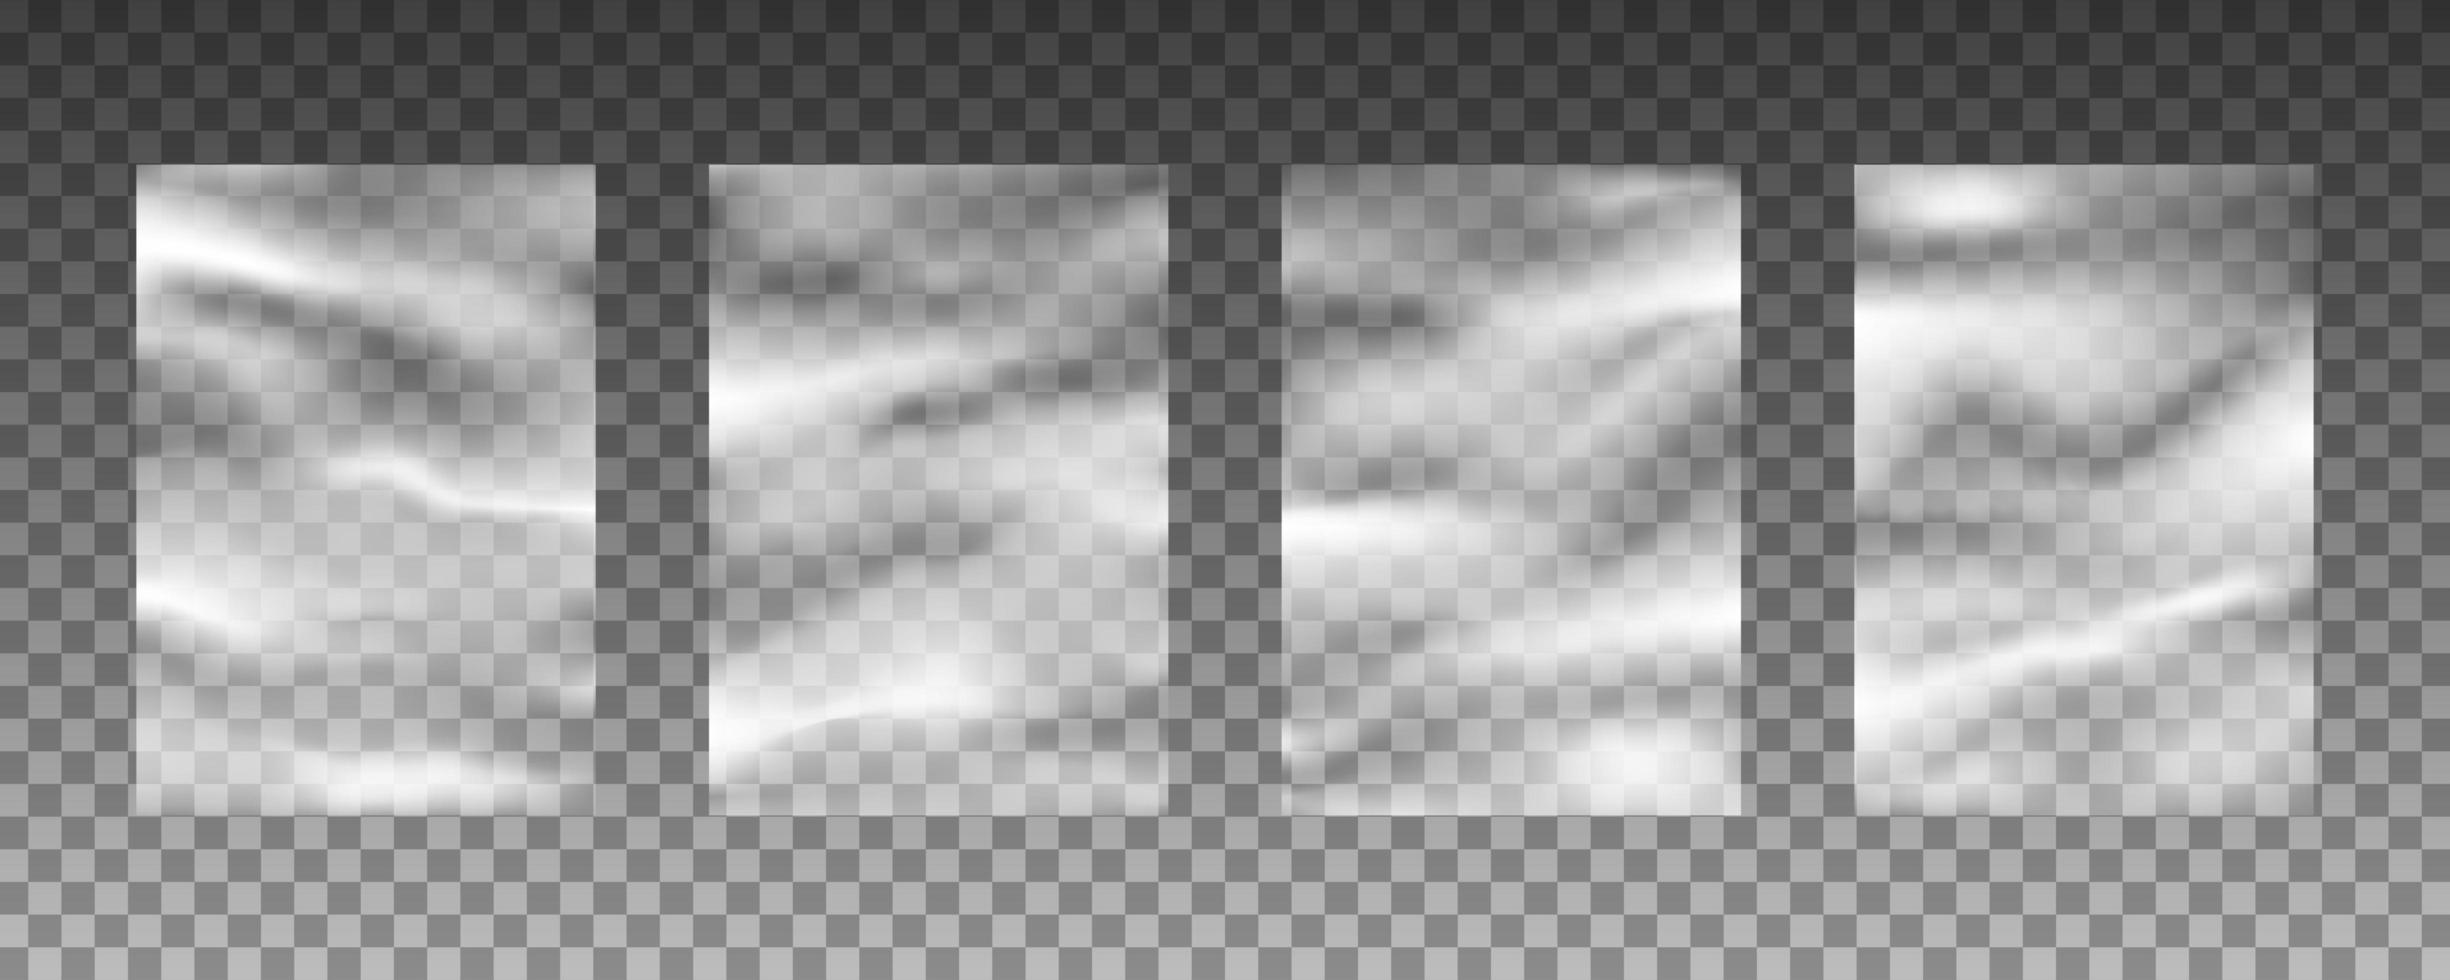 Set of transparent plastic warp background textures vector